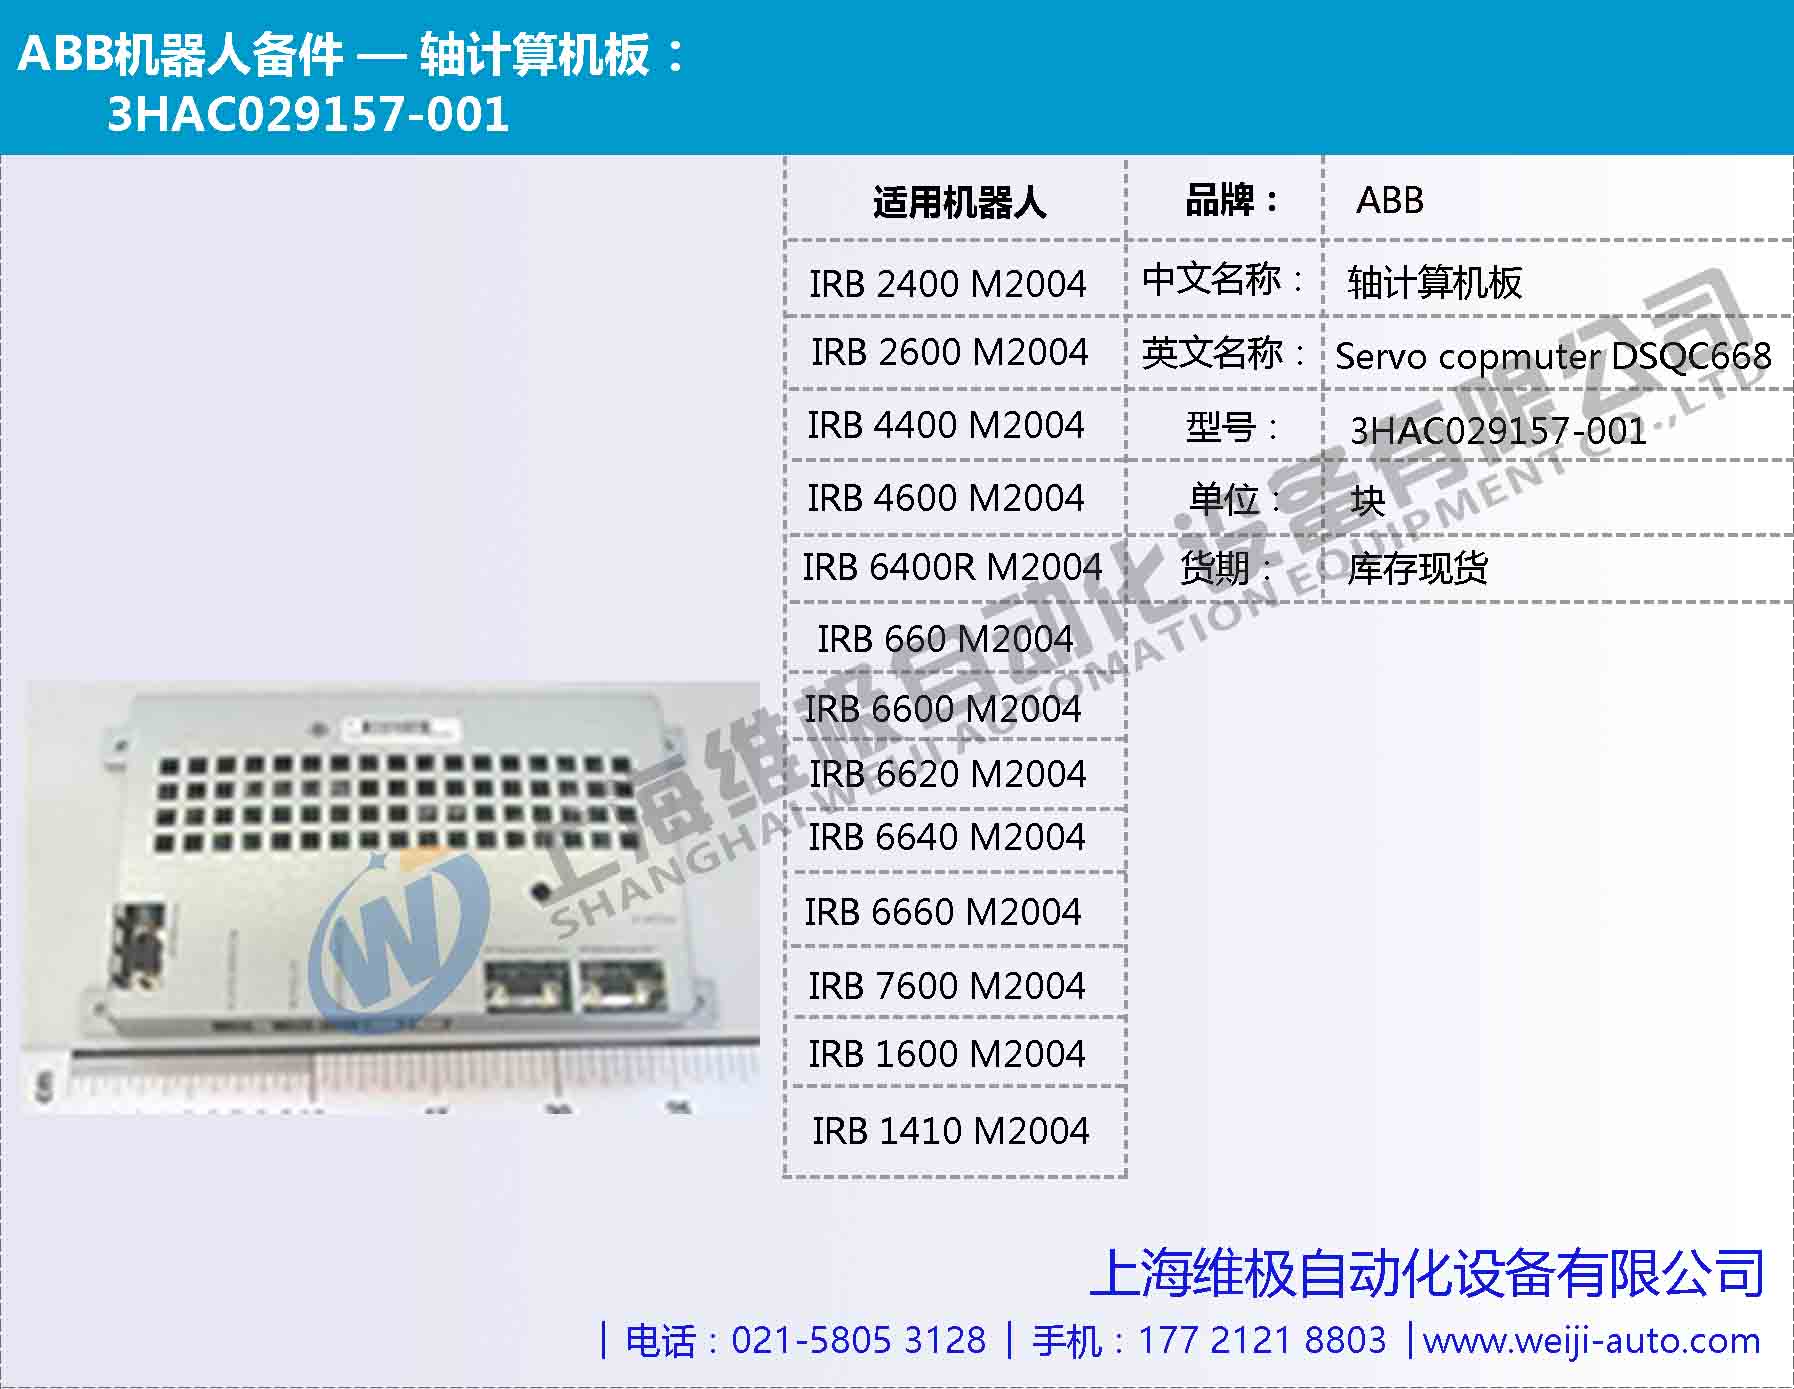 軸計算機板 3HAC029157-001 DSQC668